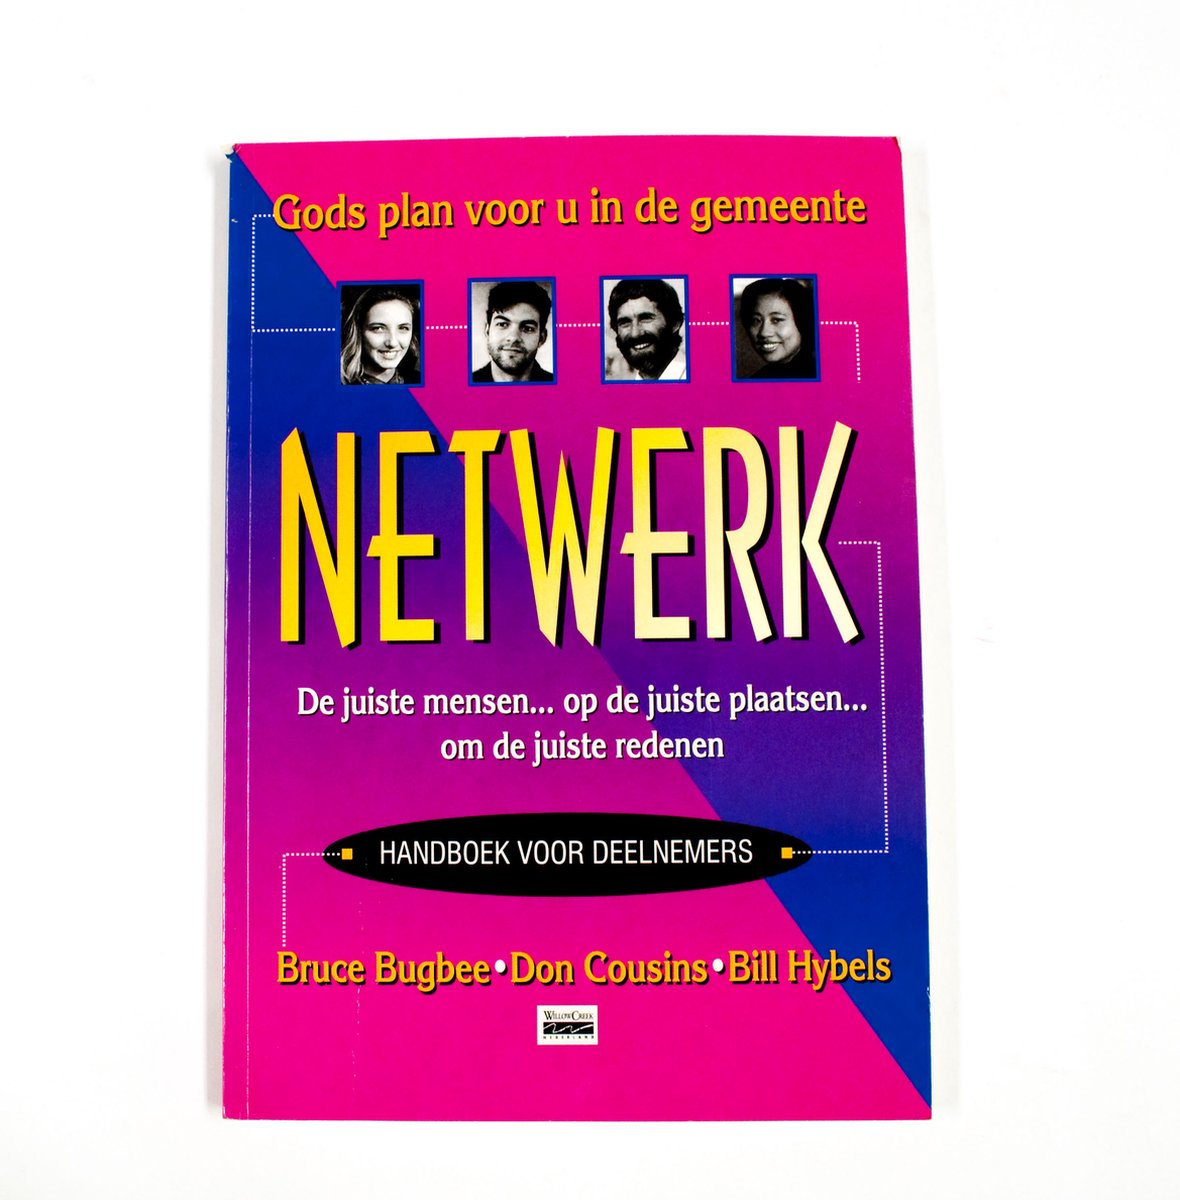 Netwerk - handboek voor deelnemers